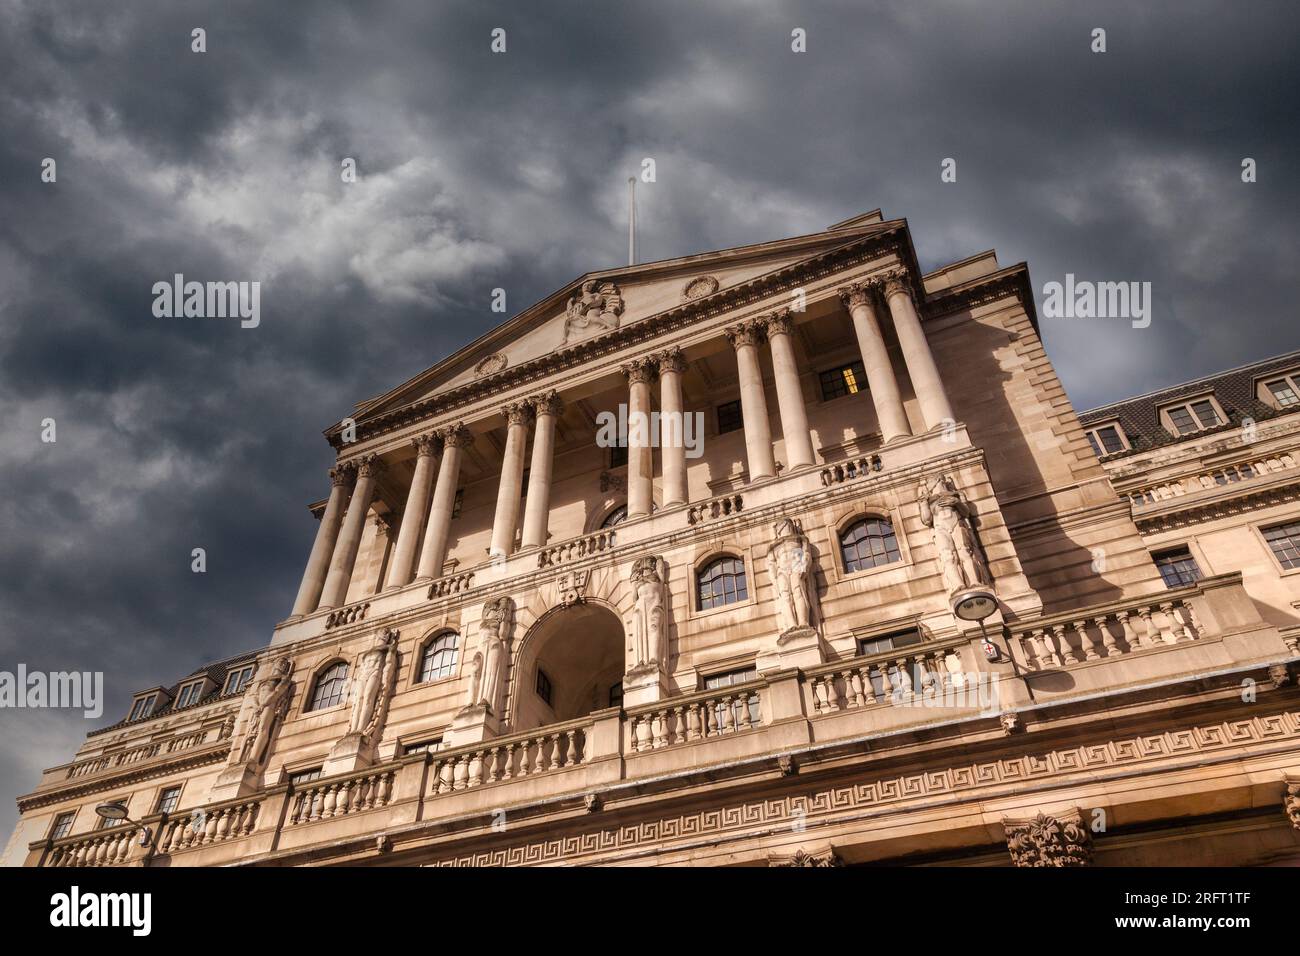 Bank of England, mit stürmischem, schwarzem Himmel. Problemkonzepte, finanzielle Sorgen, Zinssteigerungen. Threadneedle Stree, London, Großbritannien. Stockfoto